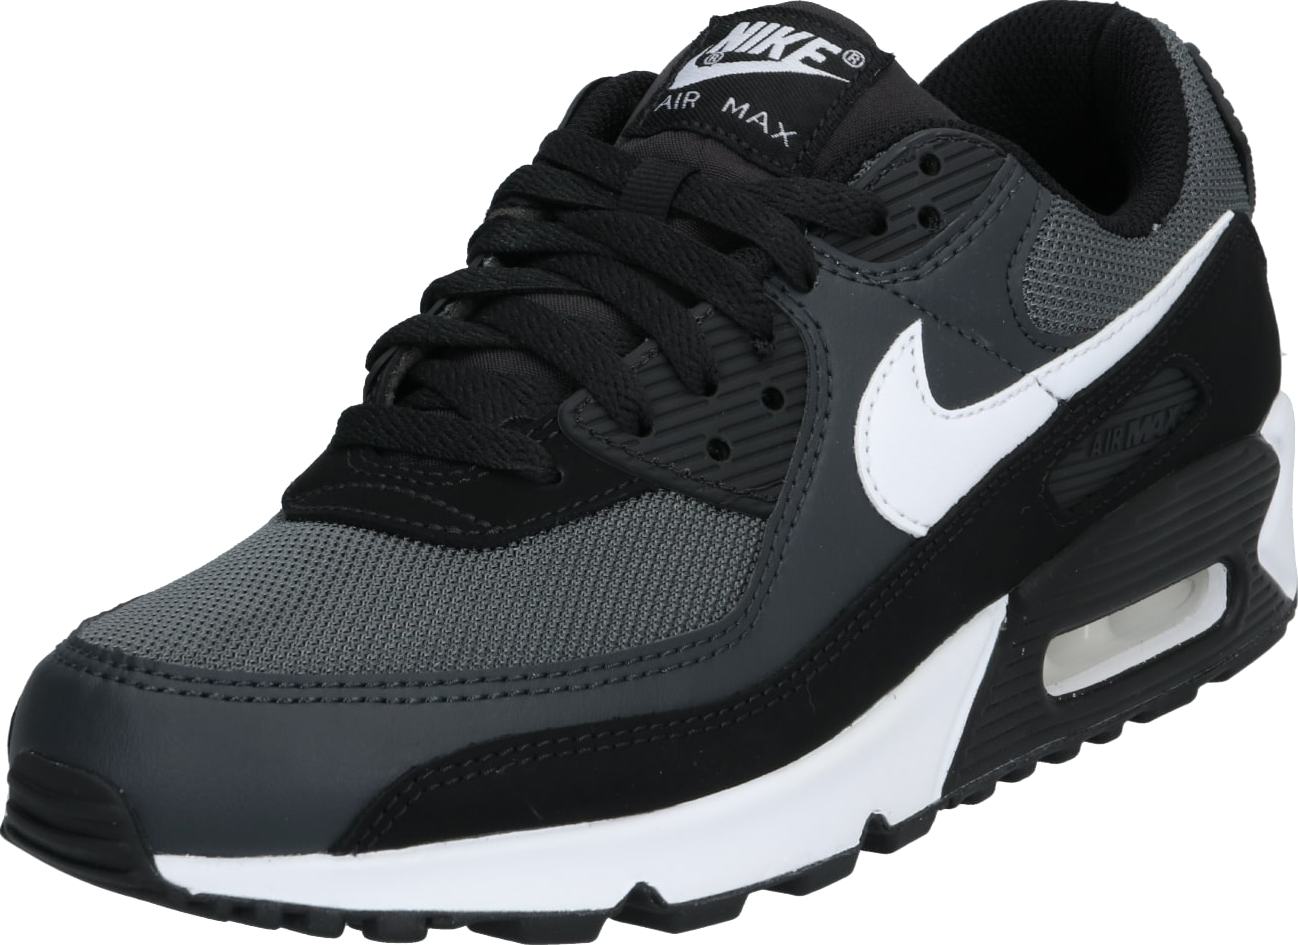 Tenisky 'AIR MAX 90' Nike Sportswear šedá / černá / bílá